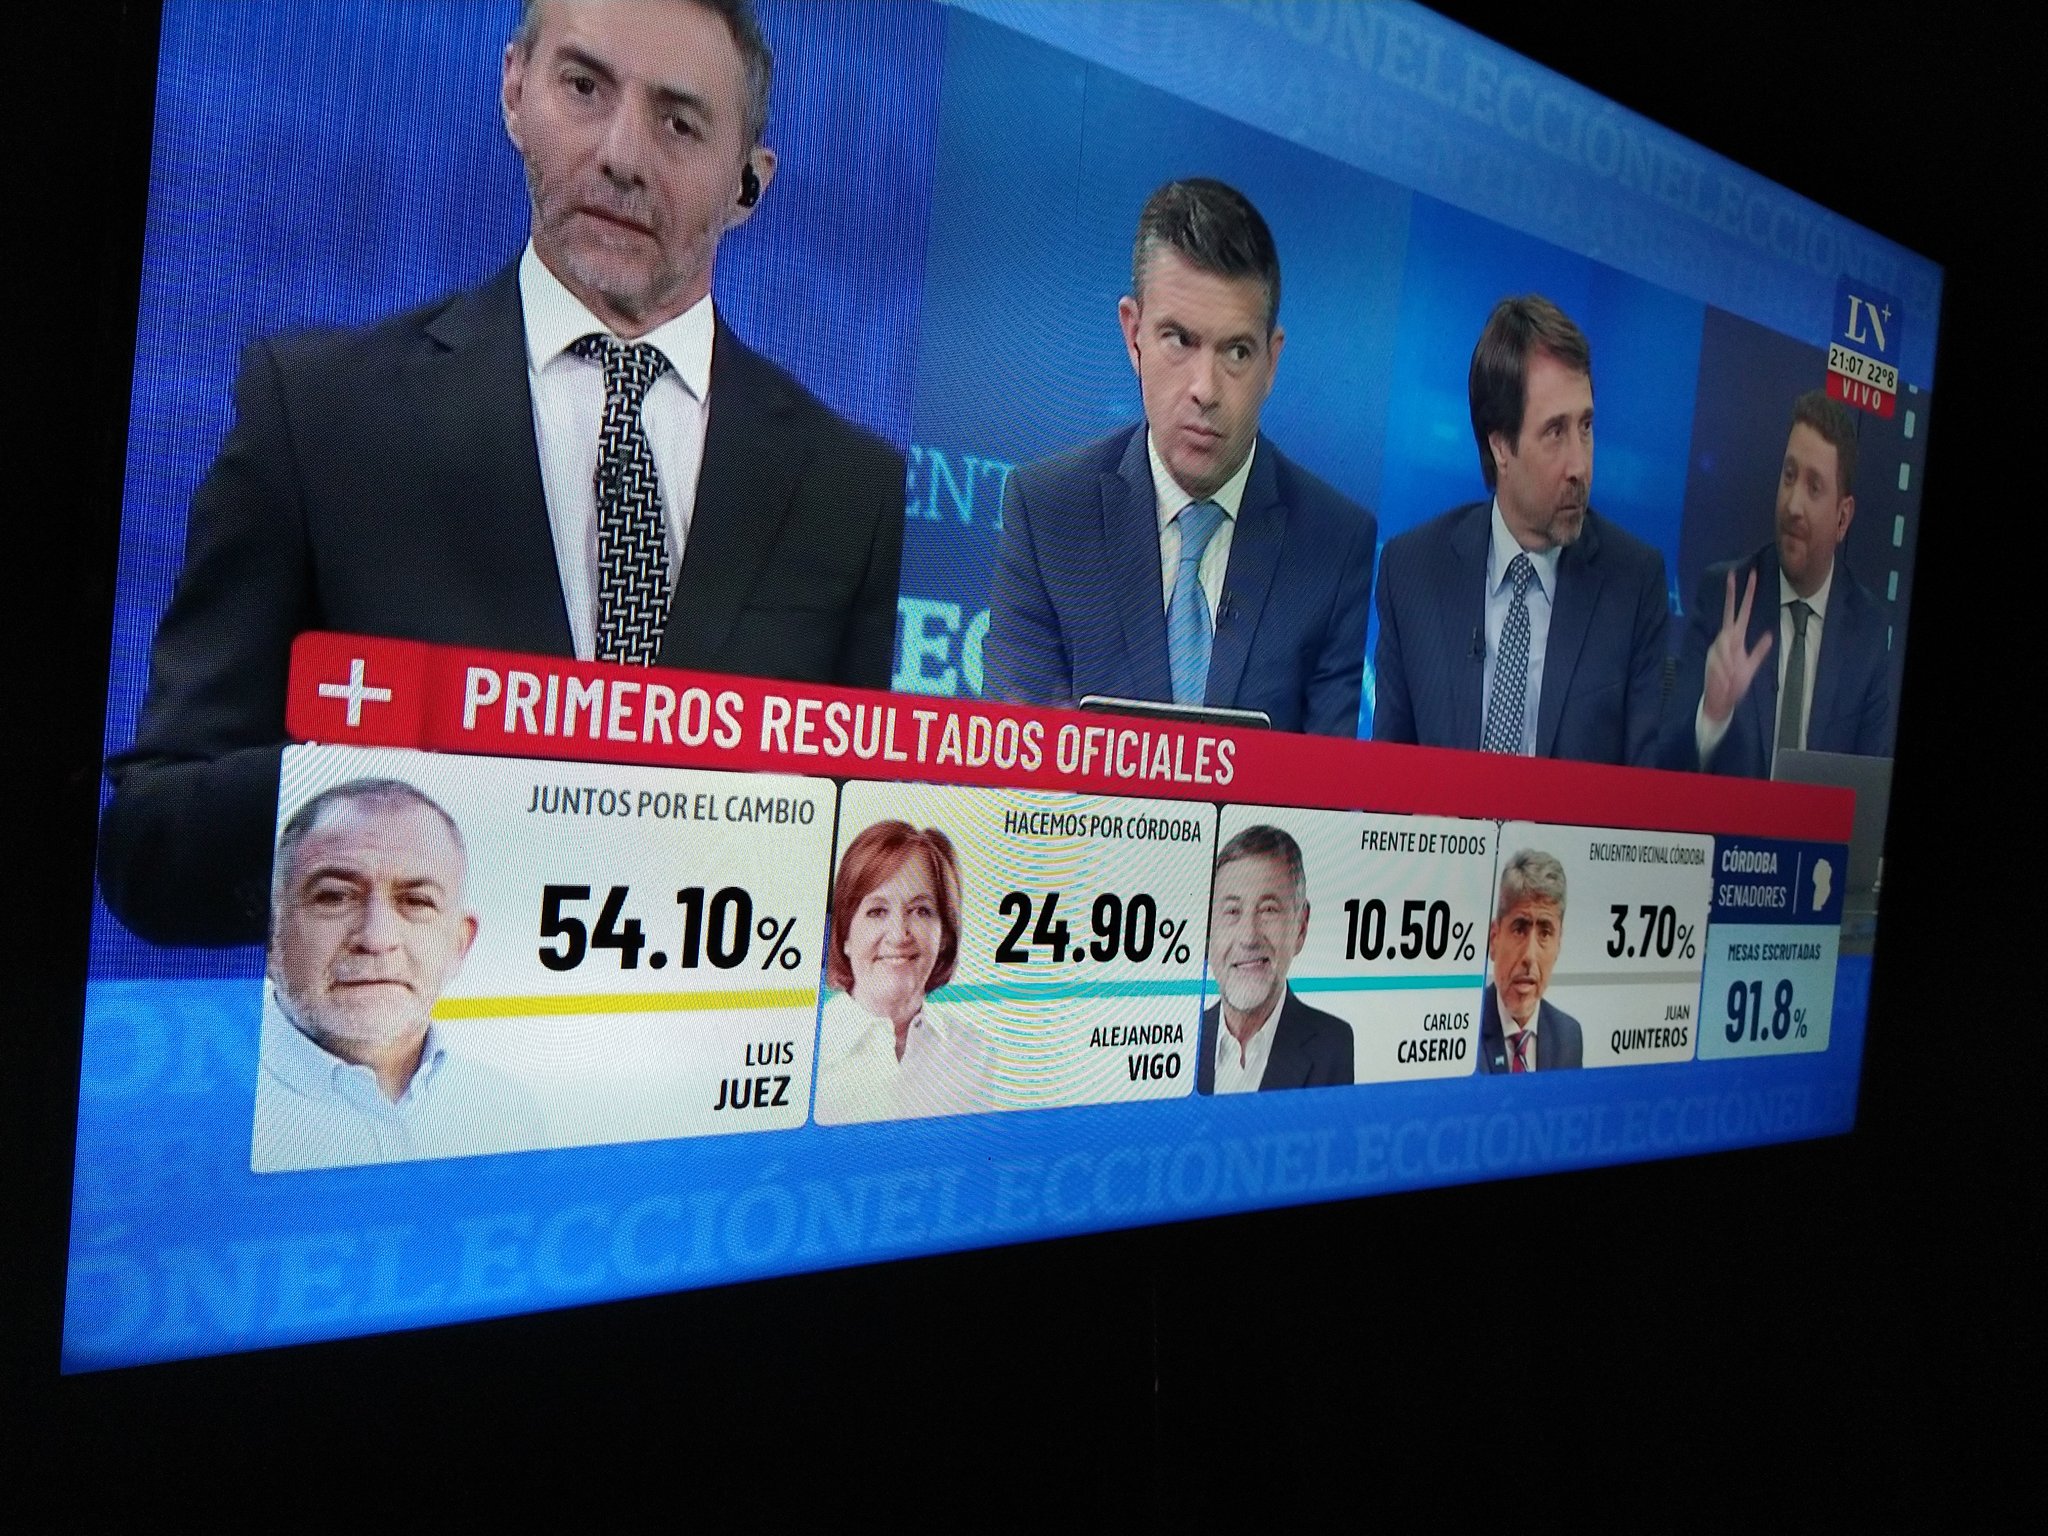 Juntos por el Cambio obtiene mayoría en Cámara de Diputados y Senado en Argentina